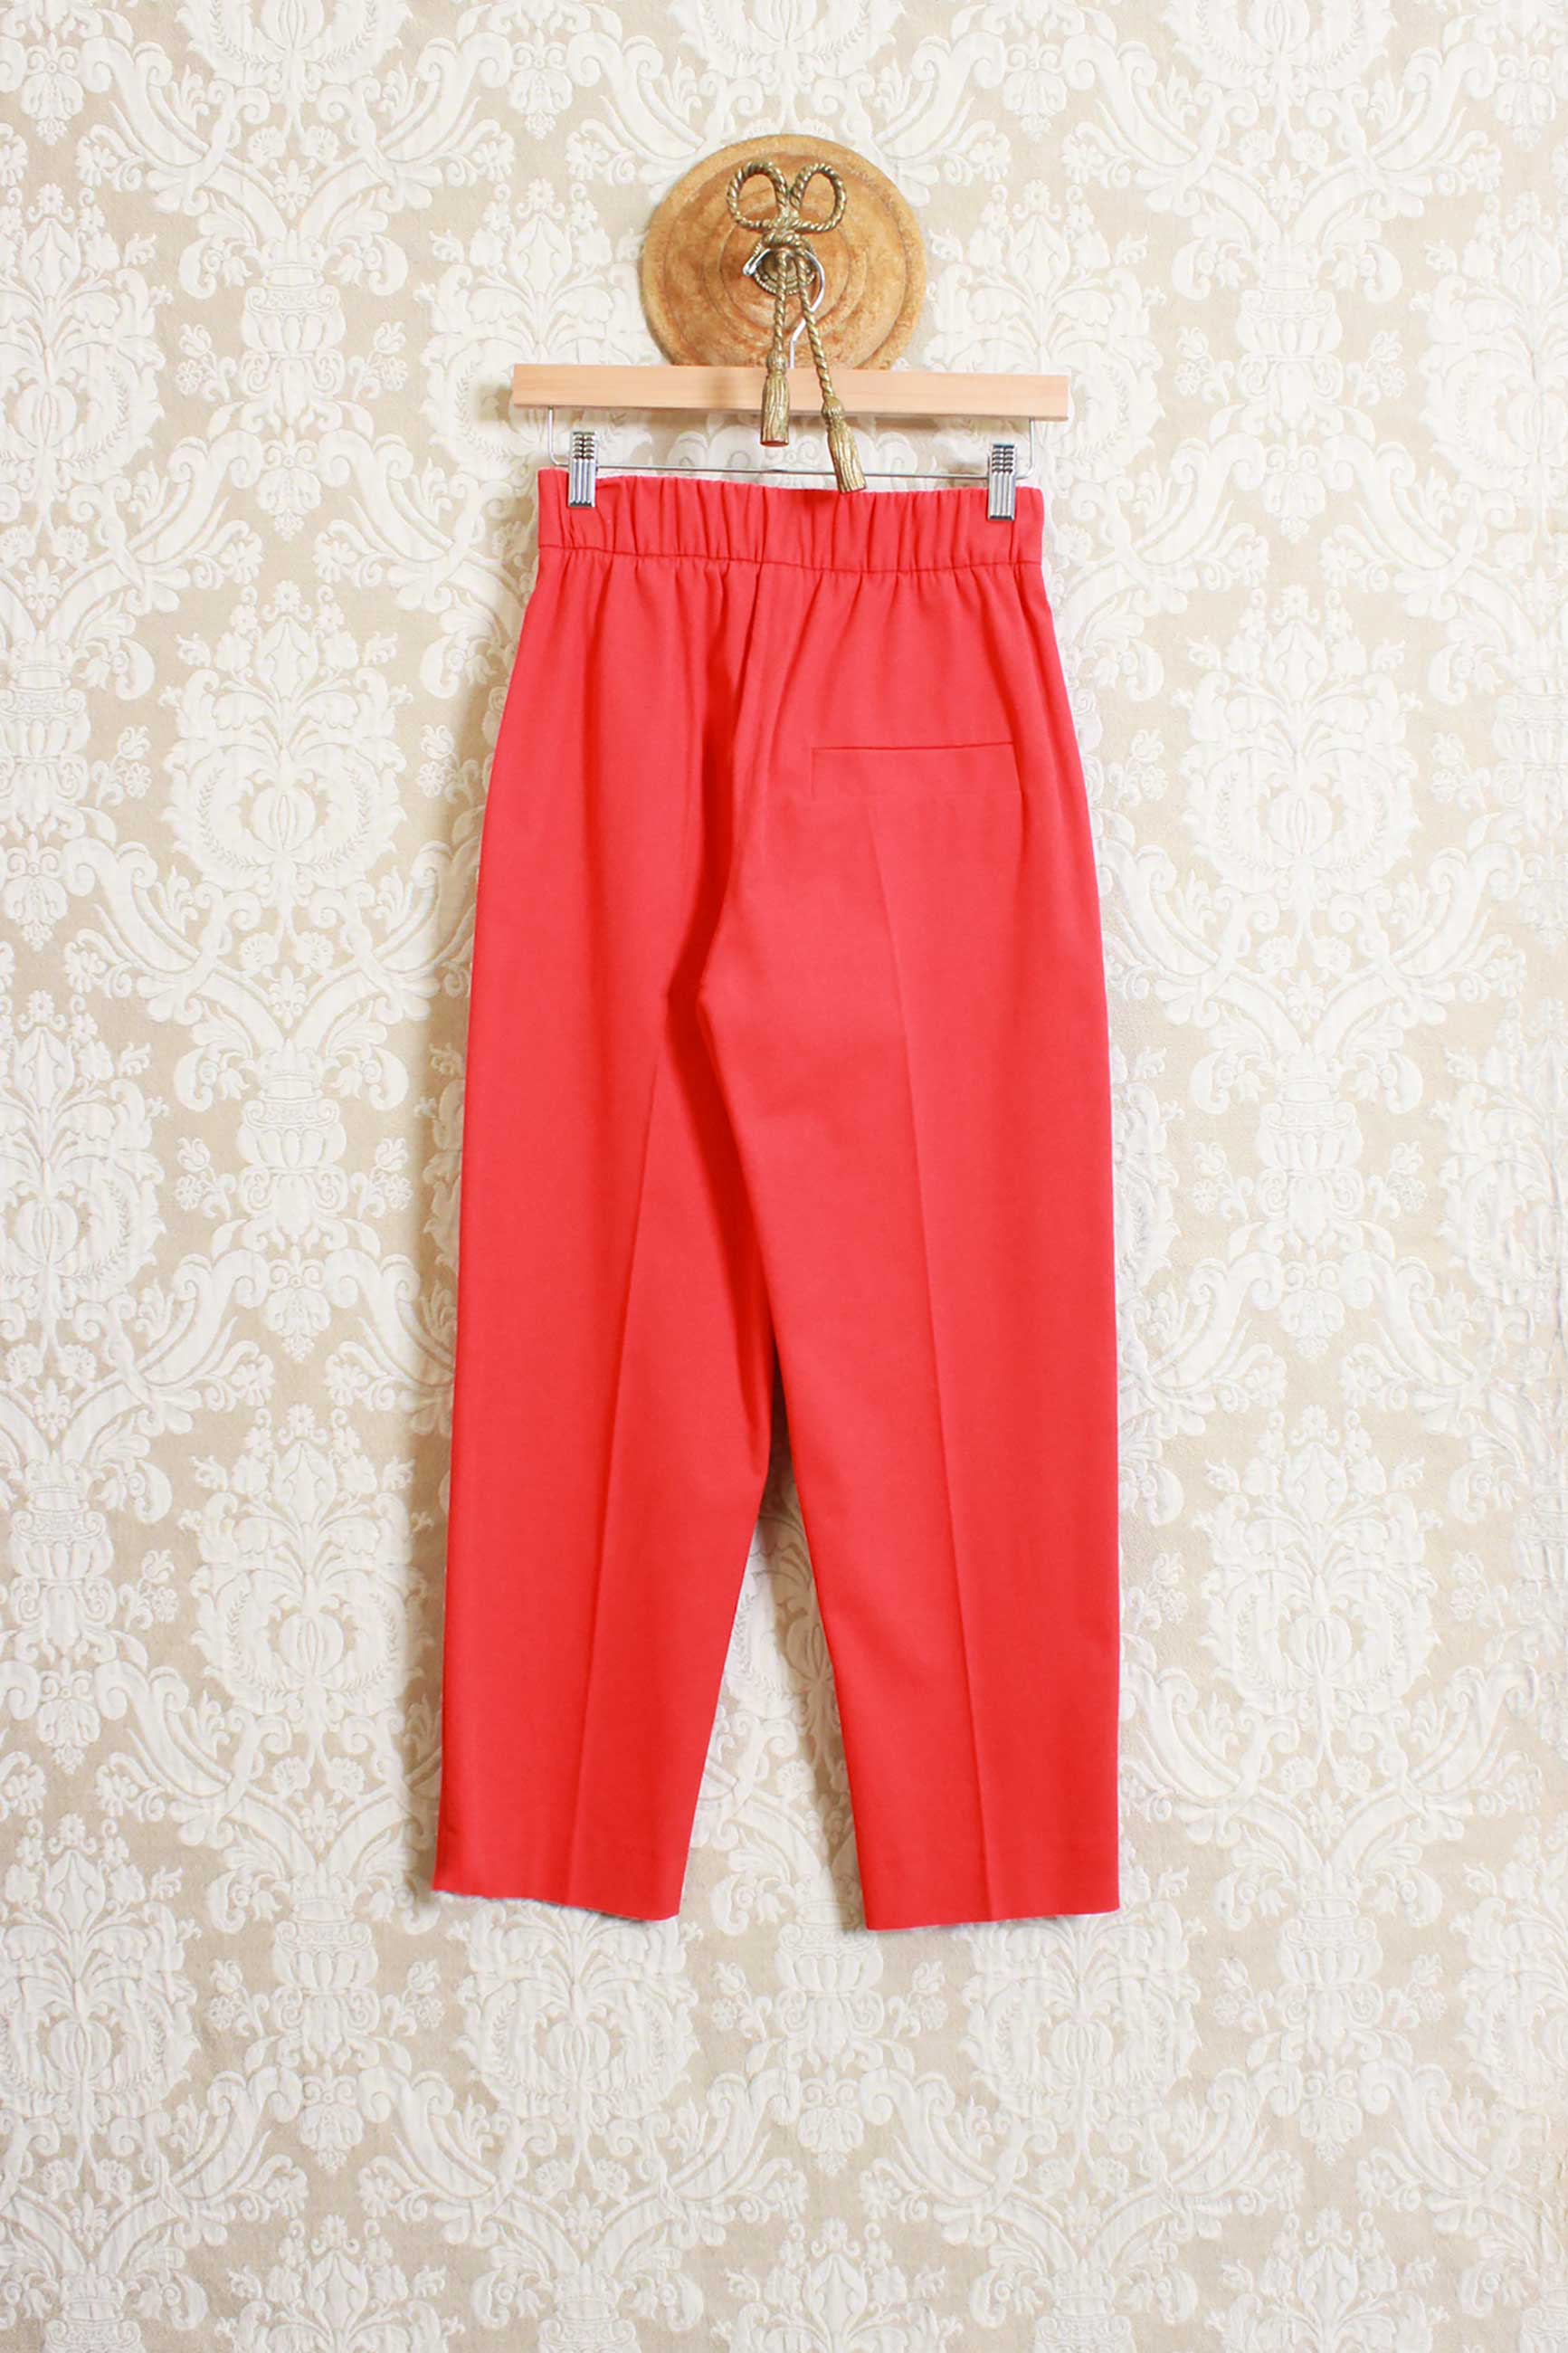 Pantalone cropped Kilo di Tela9 da donna con elastico in vita color red passion